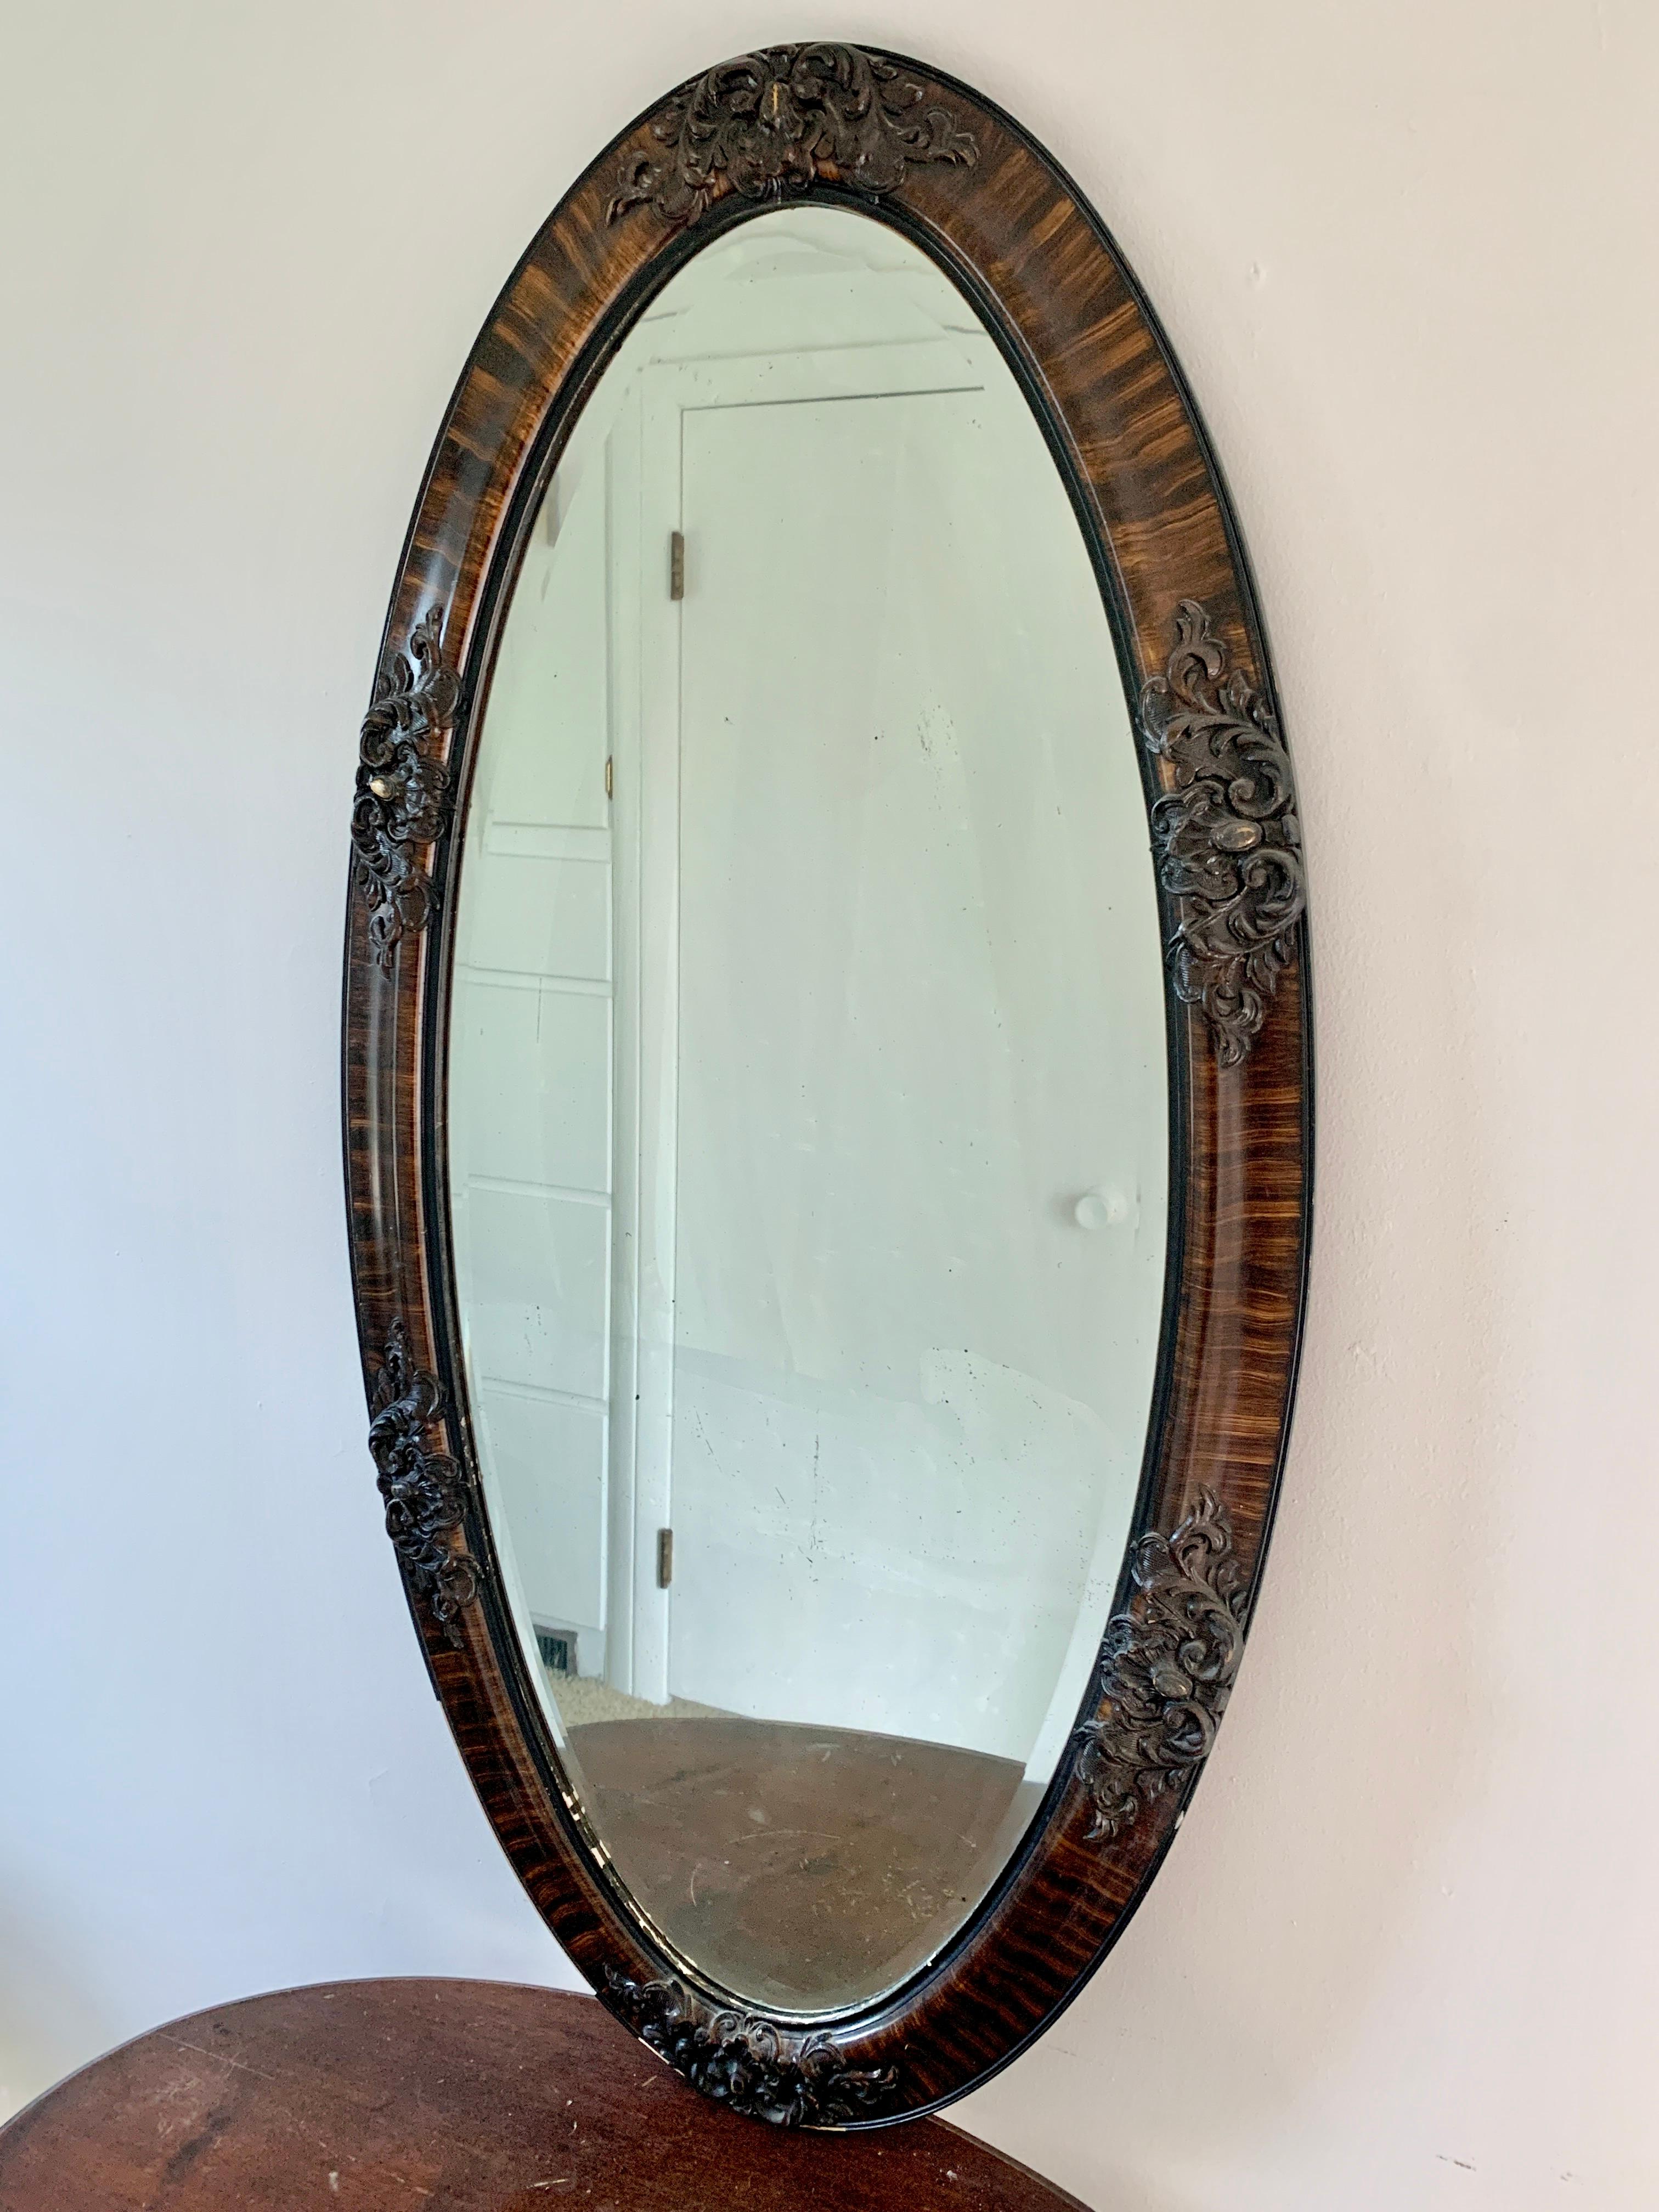 Magnifique miroir mural ovale victorien ancien avec détails sculptés

USA, Circa Late 19th Century

Cadre en chêne tigré sculpté, avec détails dorés, et miroir antique biseauté

Dimensions : 23 